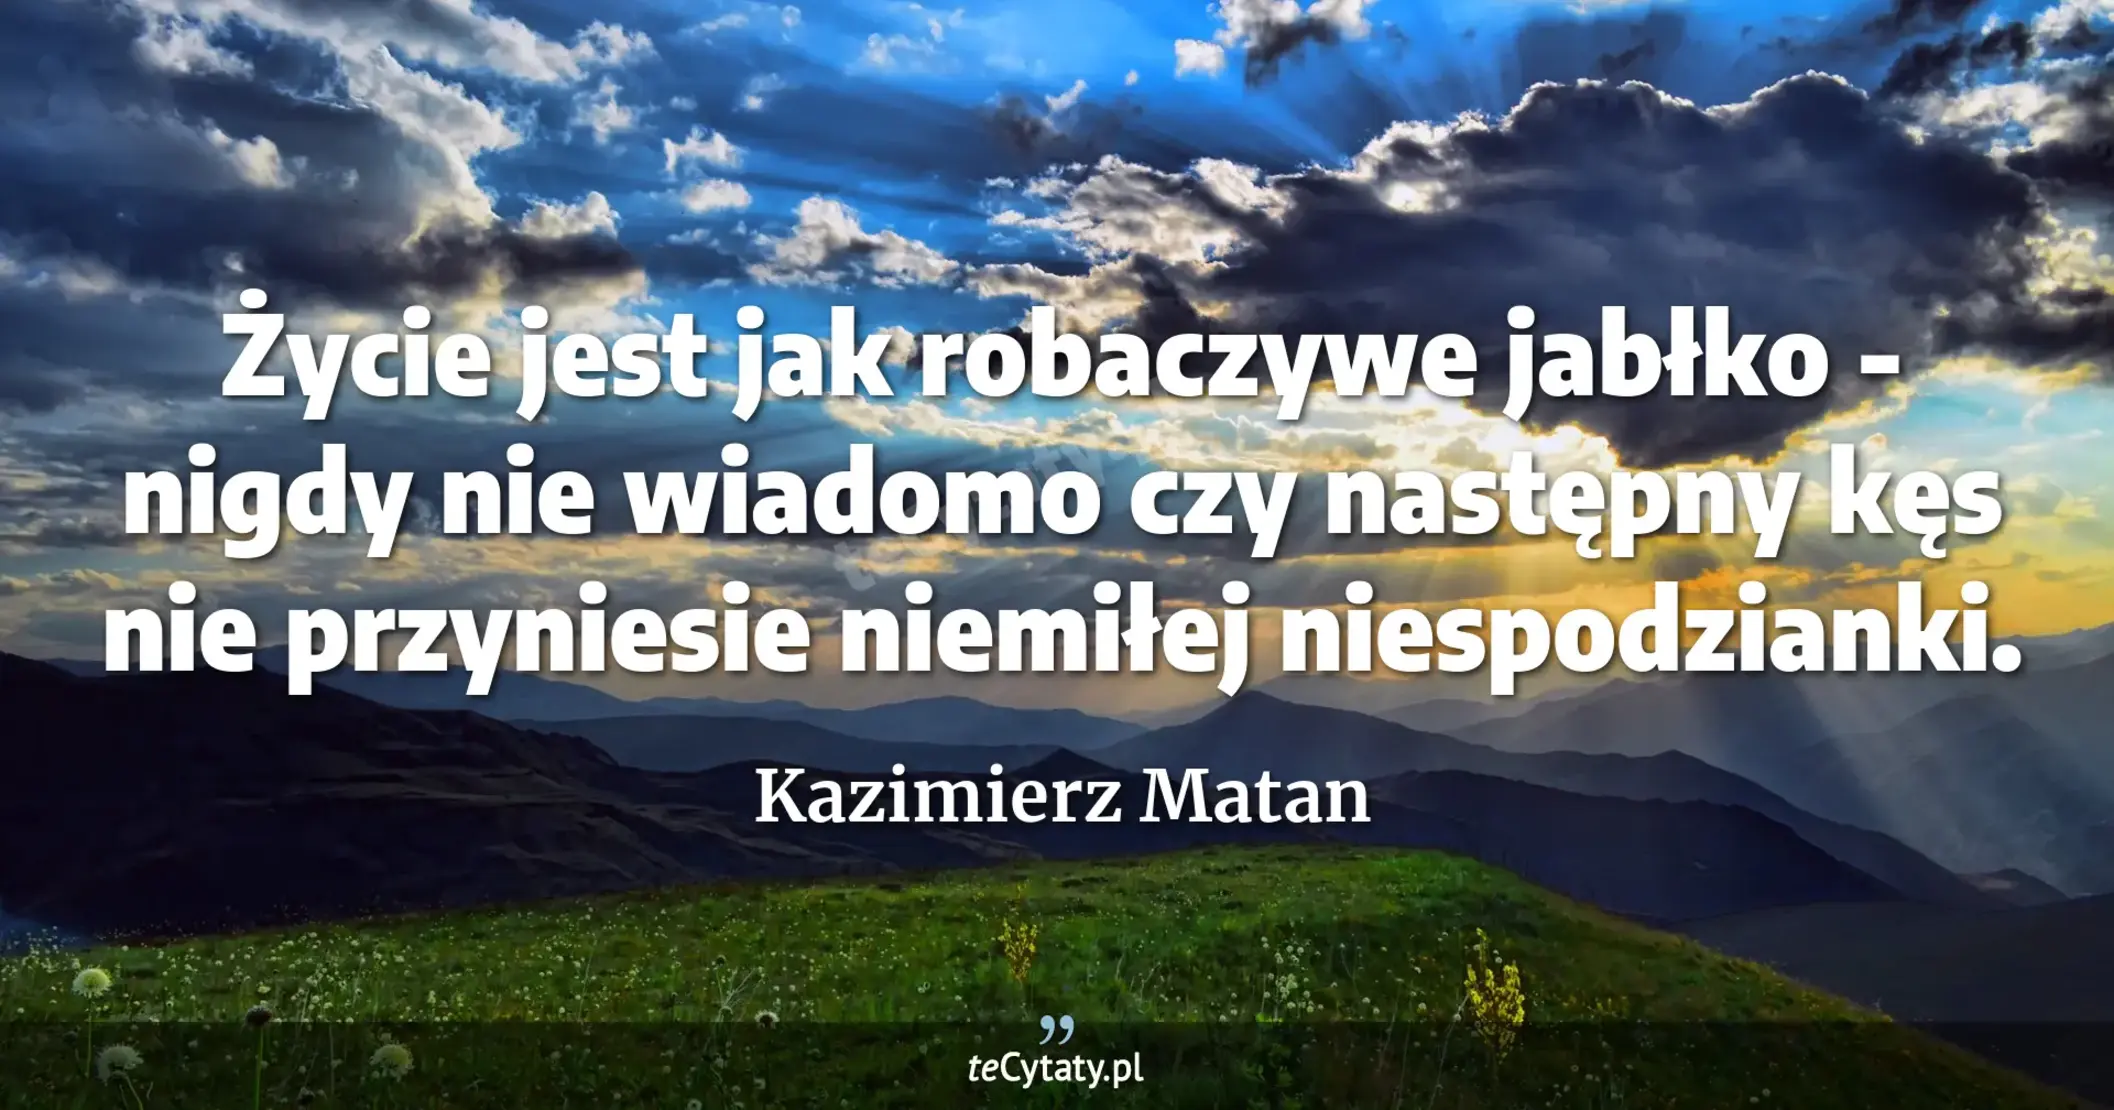 Życie jest jak robaczywe jabłko - nigdy nie wiadomo czy następny kęs nie przyniesie niemiłej niespodzianki. - Kazimierz Matan